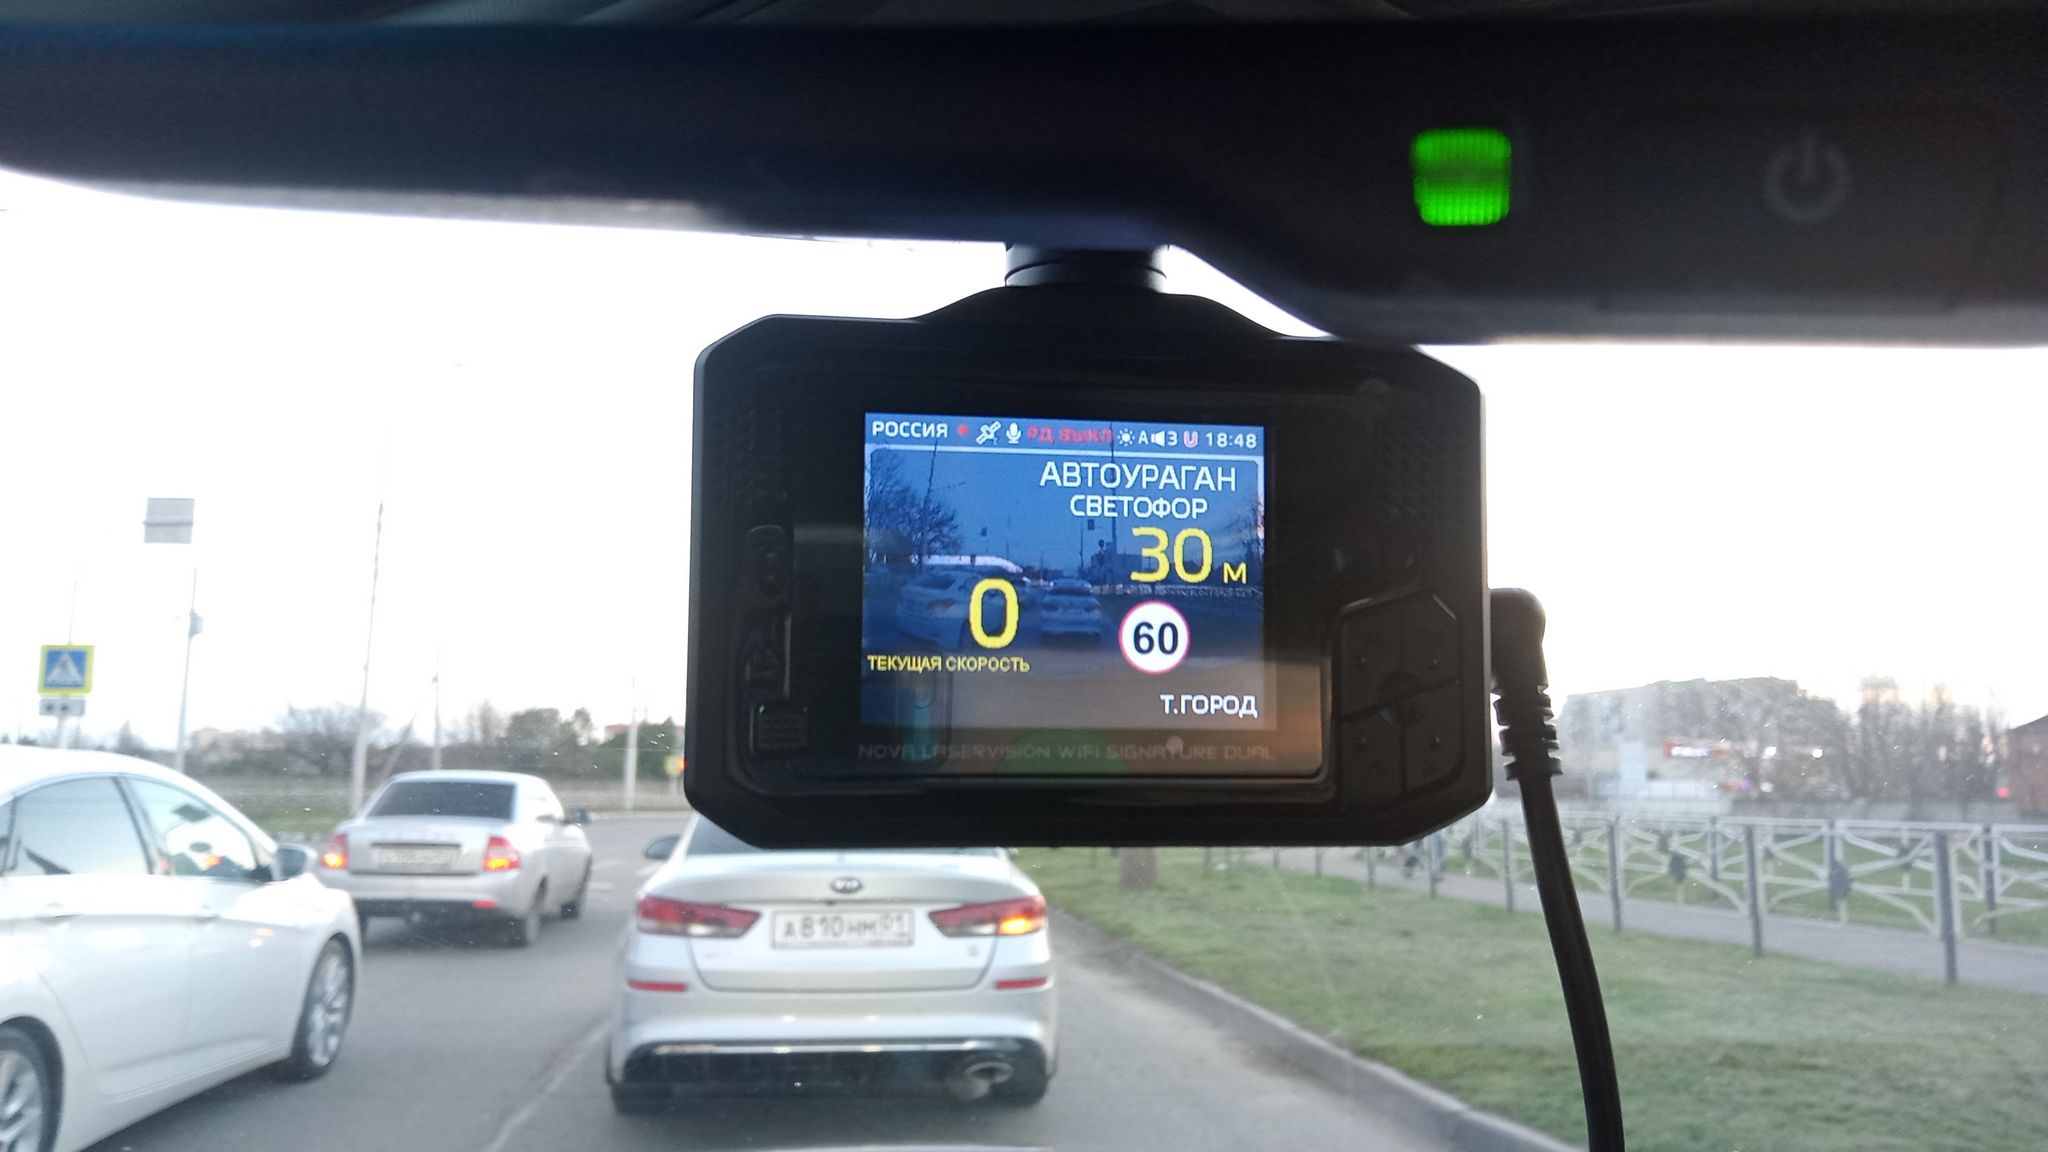 Видеорегистратор с GPS информатором. Радар детекторы автомобильные 2010-2015. Антирадар для смартфона. GPS информатор андроид. Радар оповещение